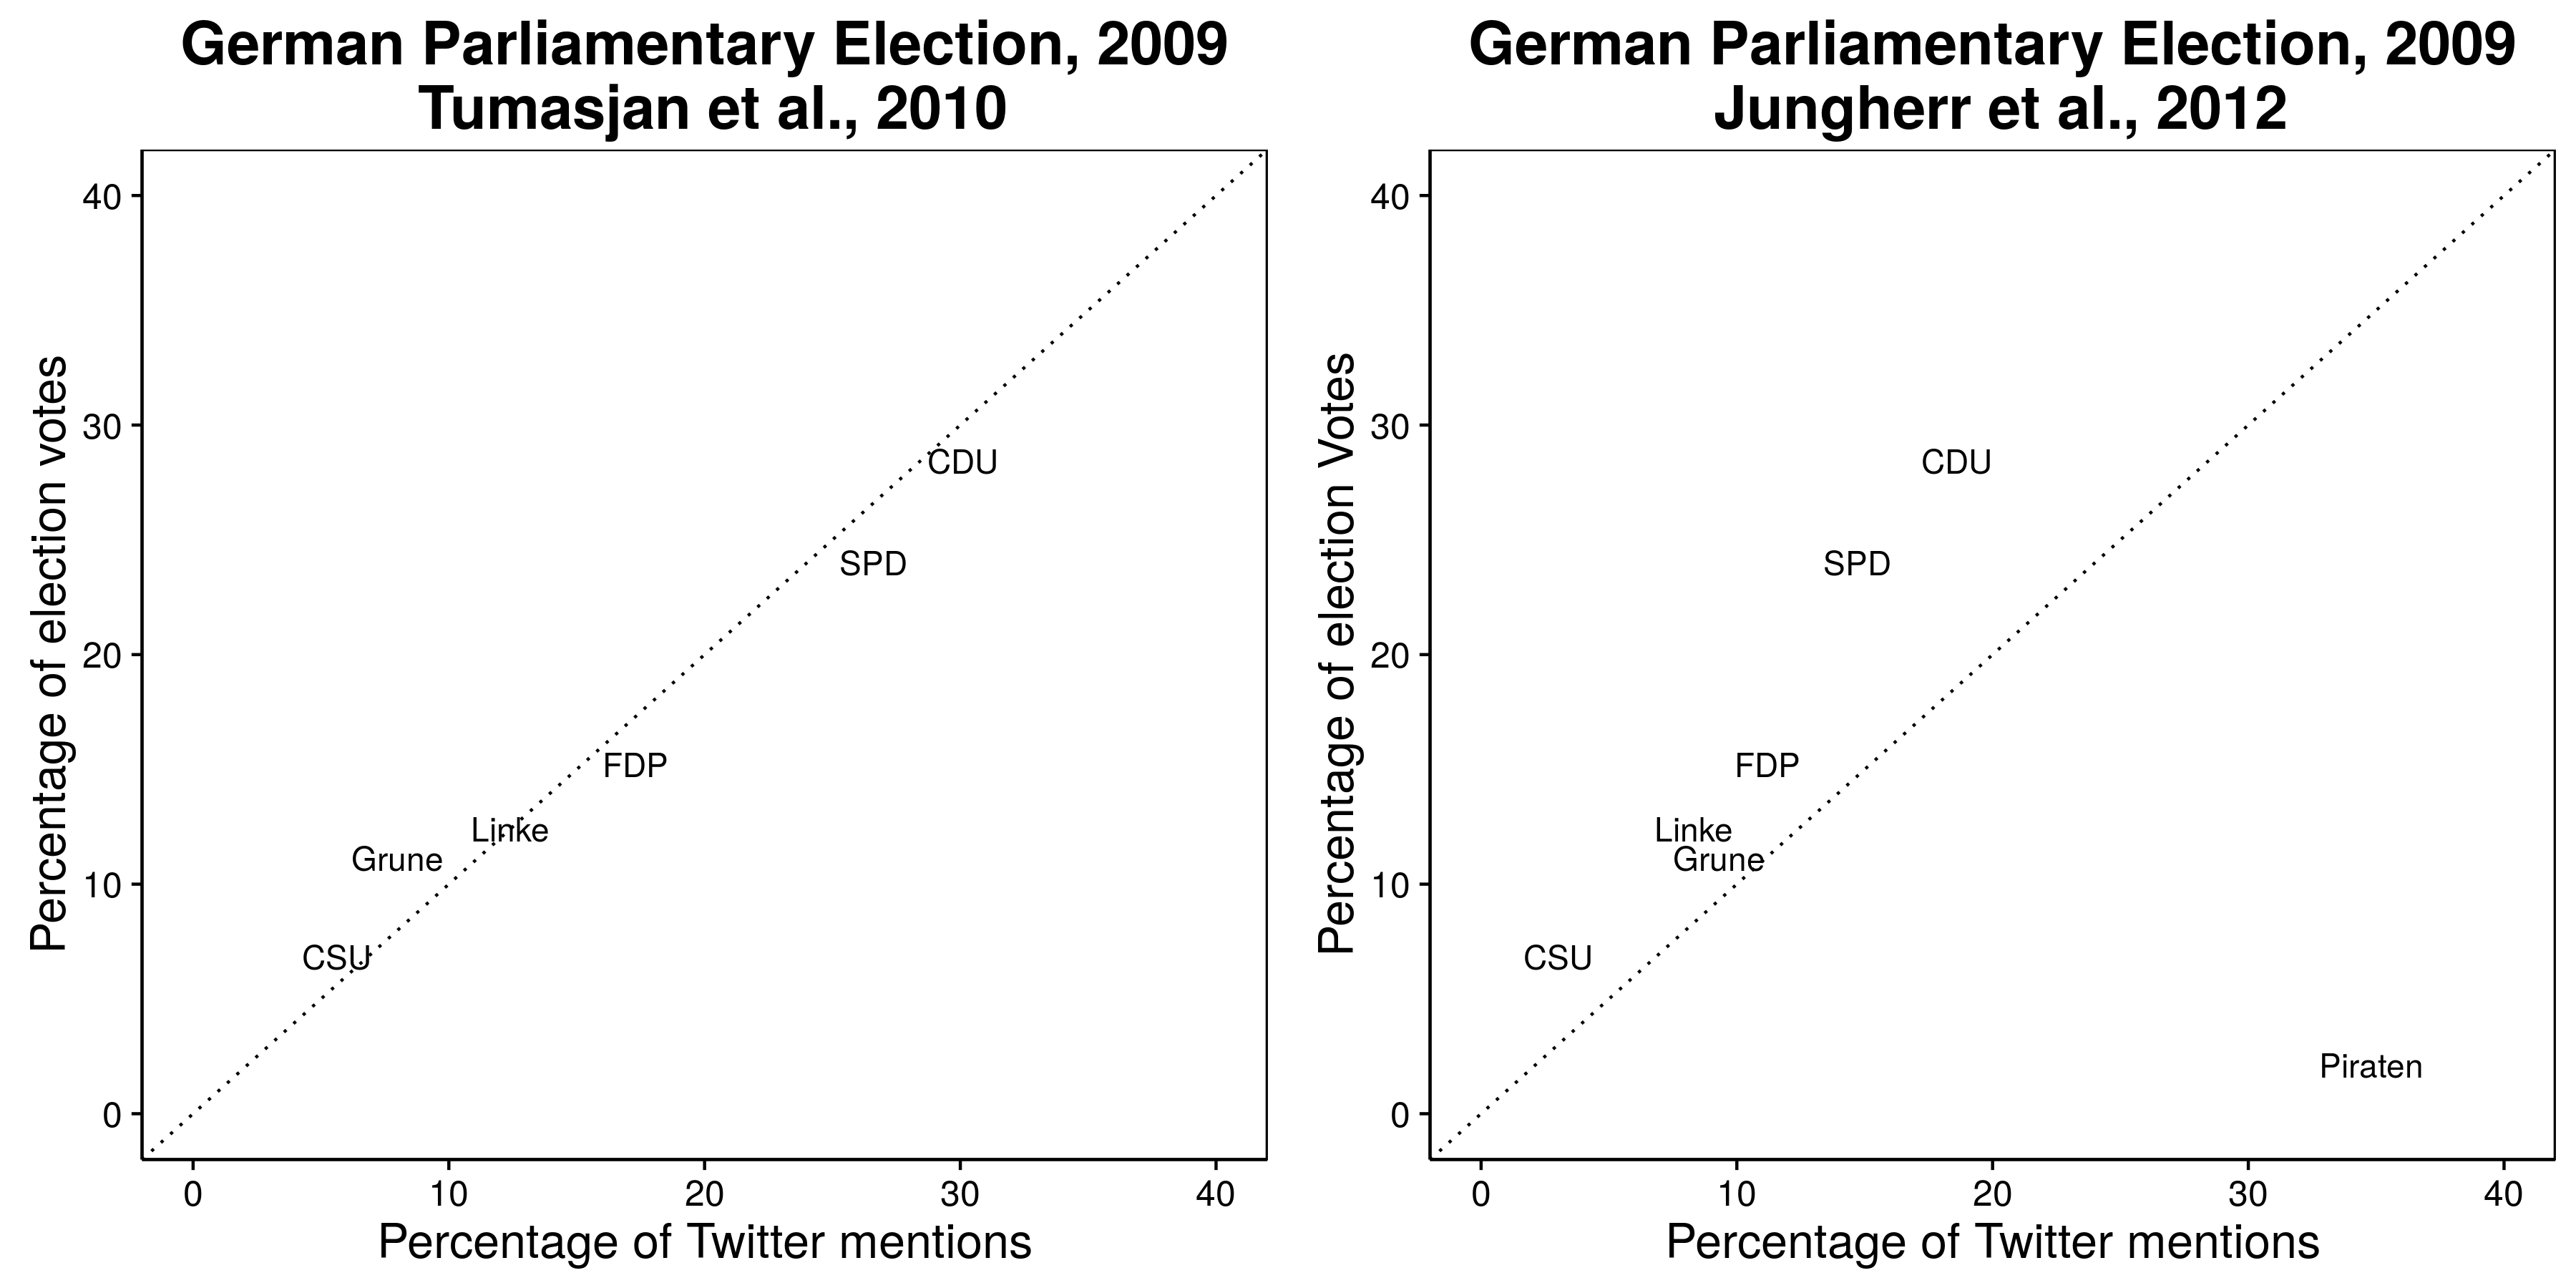 图2.3：Twitter提及似乎预测了2009年德国大选的结果（Tumasjan et al.2010），但这不包括提到最多的一方：海盗党（Jungherr，Jürgens和Schoen 2012）。见Tumasjan等人。 （2012年）支持排除海盗党的论点。改编自Tumasjan等人。 （2010），表4和Jungherr，Jürgens和Schoen（2012），表2。